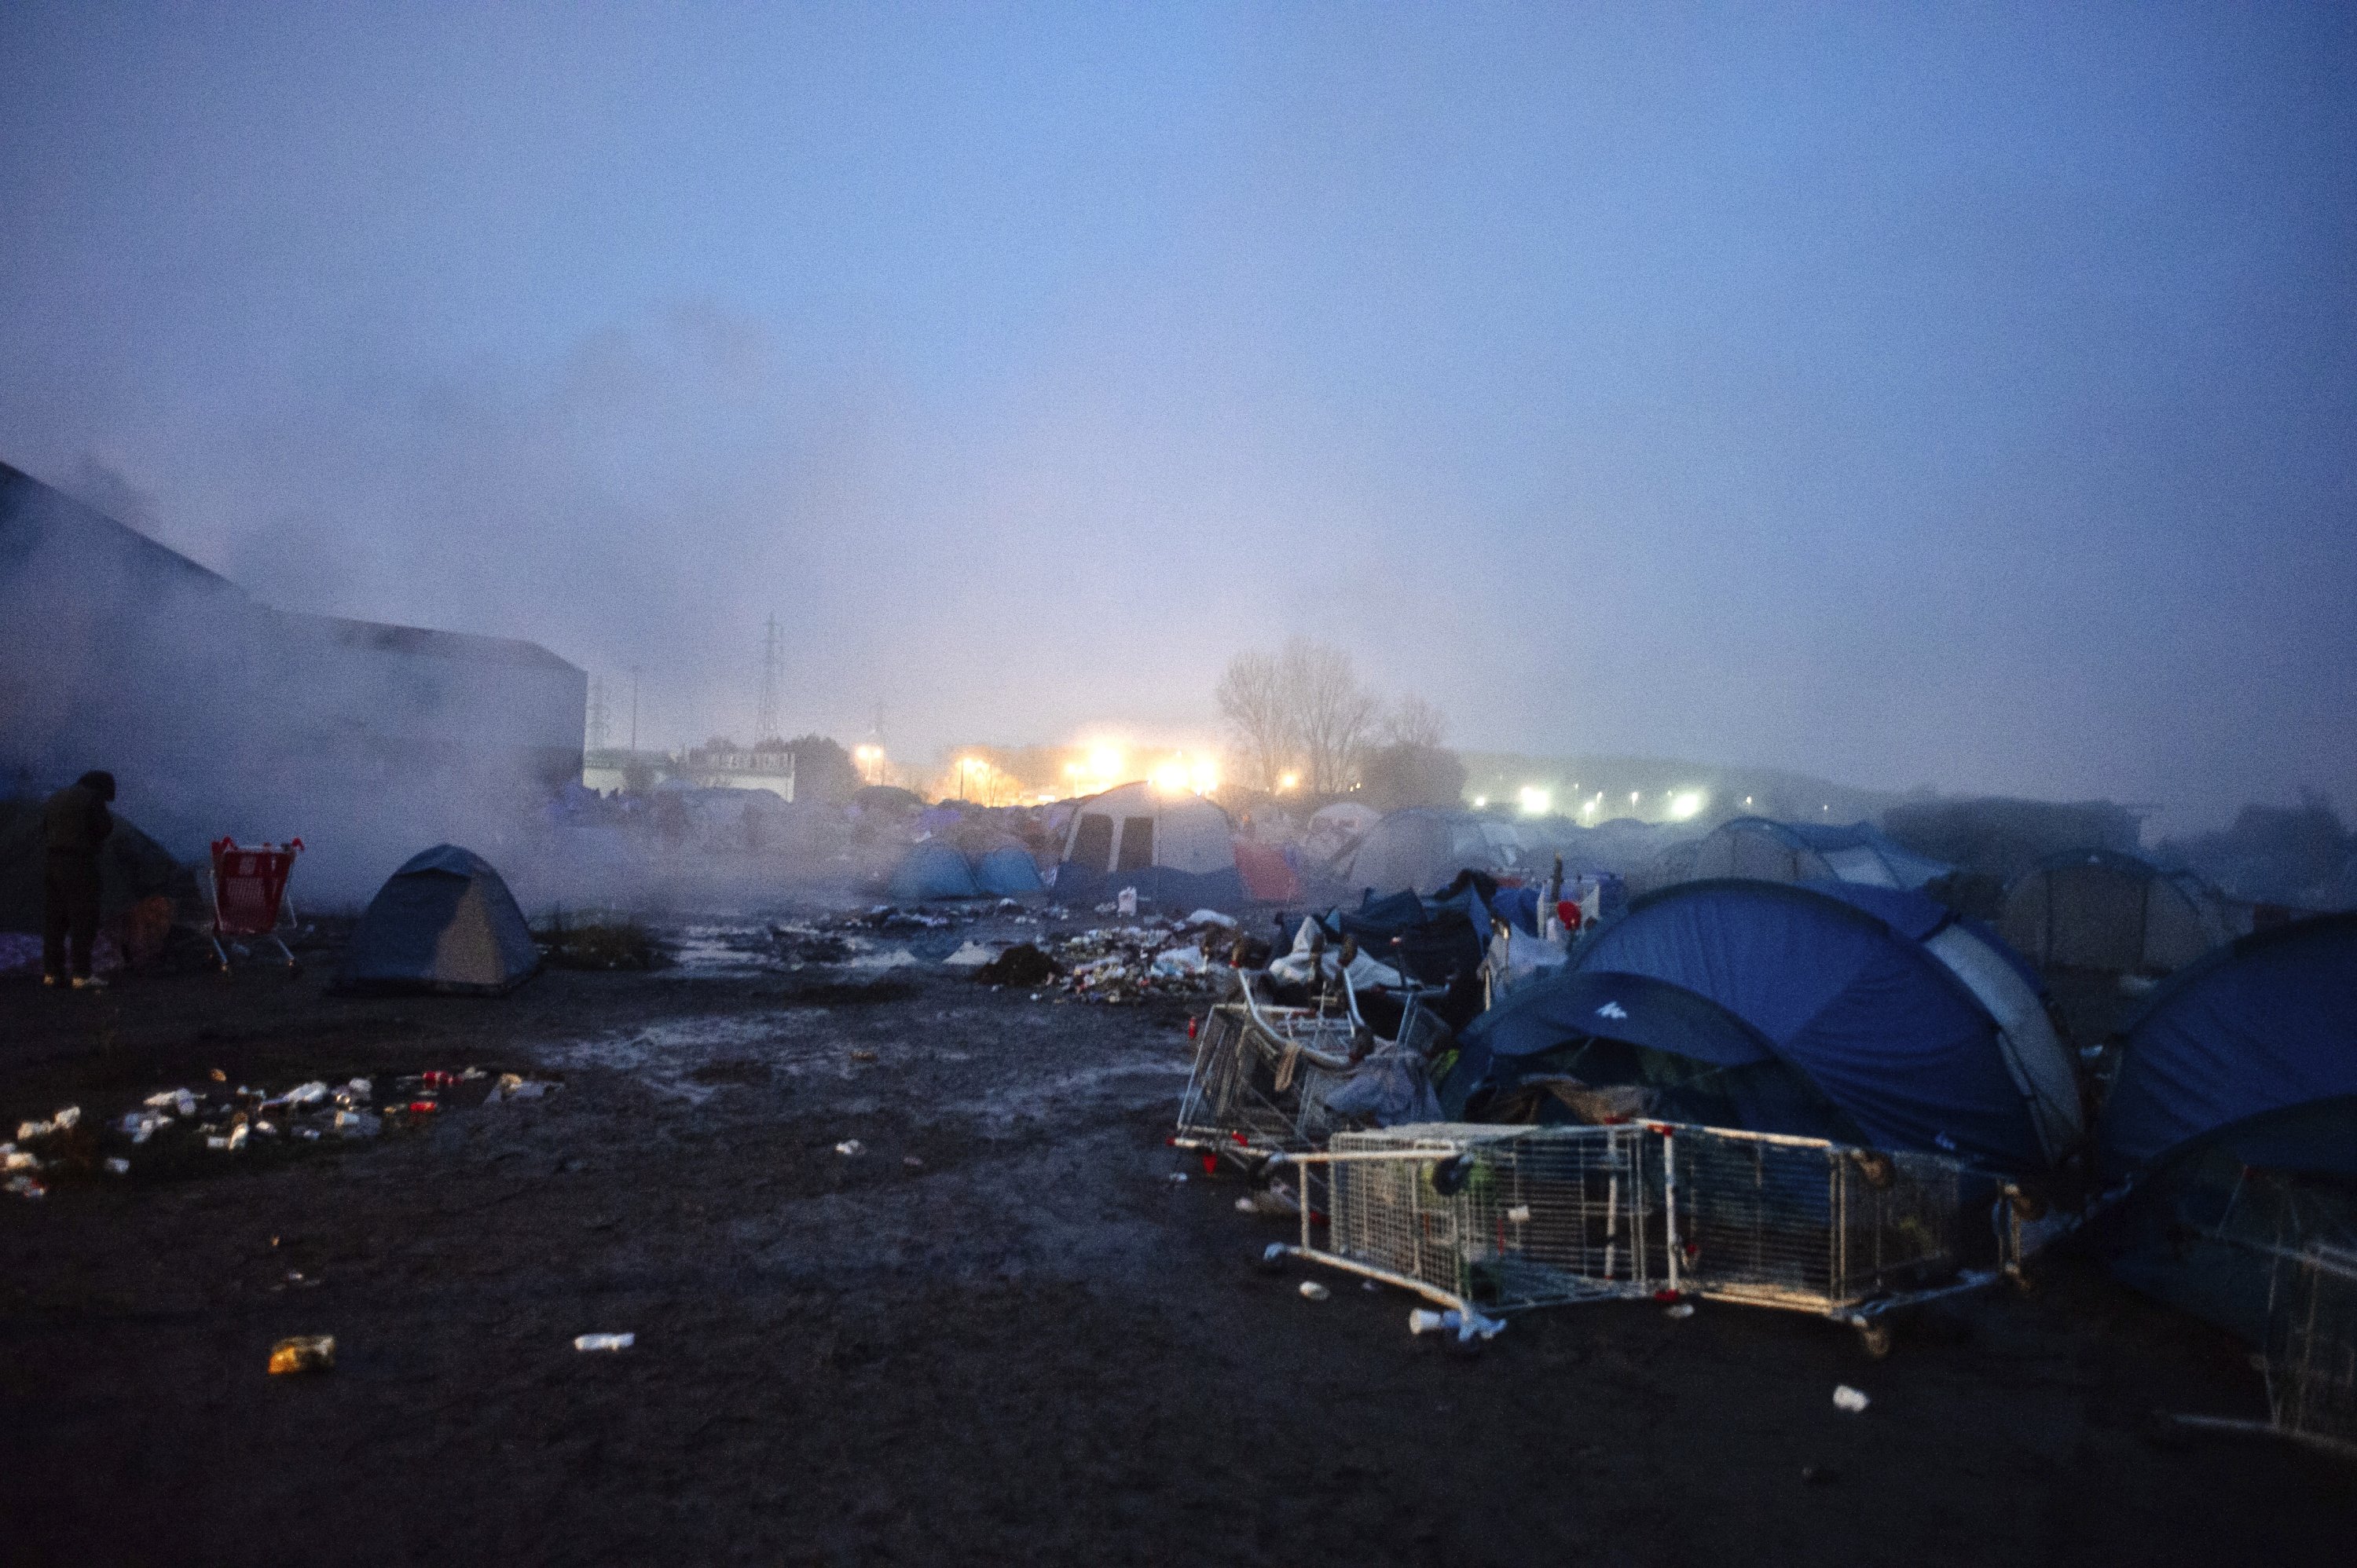 Kamp migran darurat di Grande-Synthe, Prancis utara, 16 November 2021. (AP Photo)